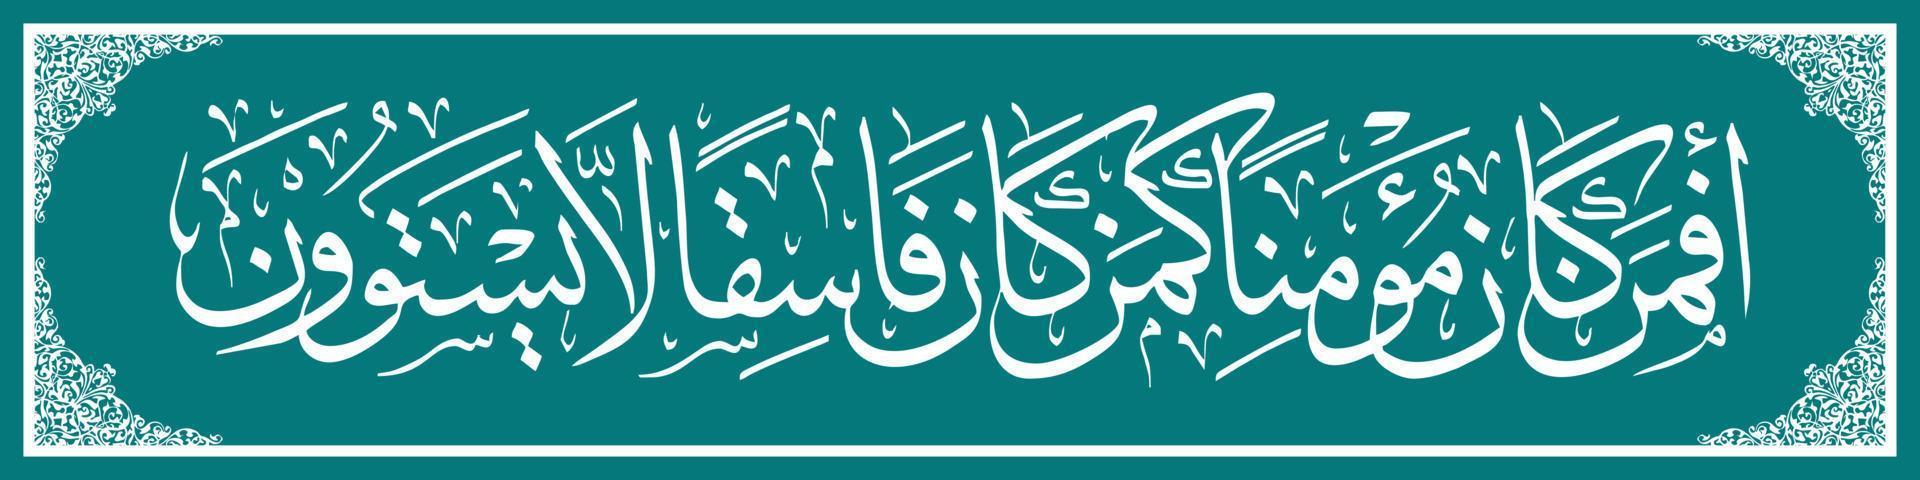 caligrafia árabe al quran surah como sajdah 18, traduz assim são os crentes como os infiéis perversos, eles não são os mesmos vetor